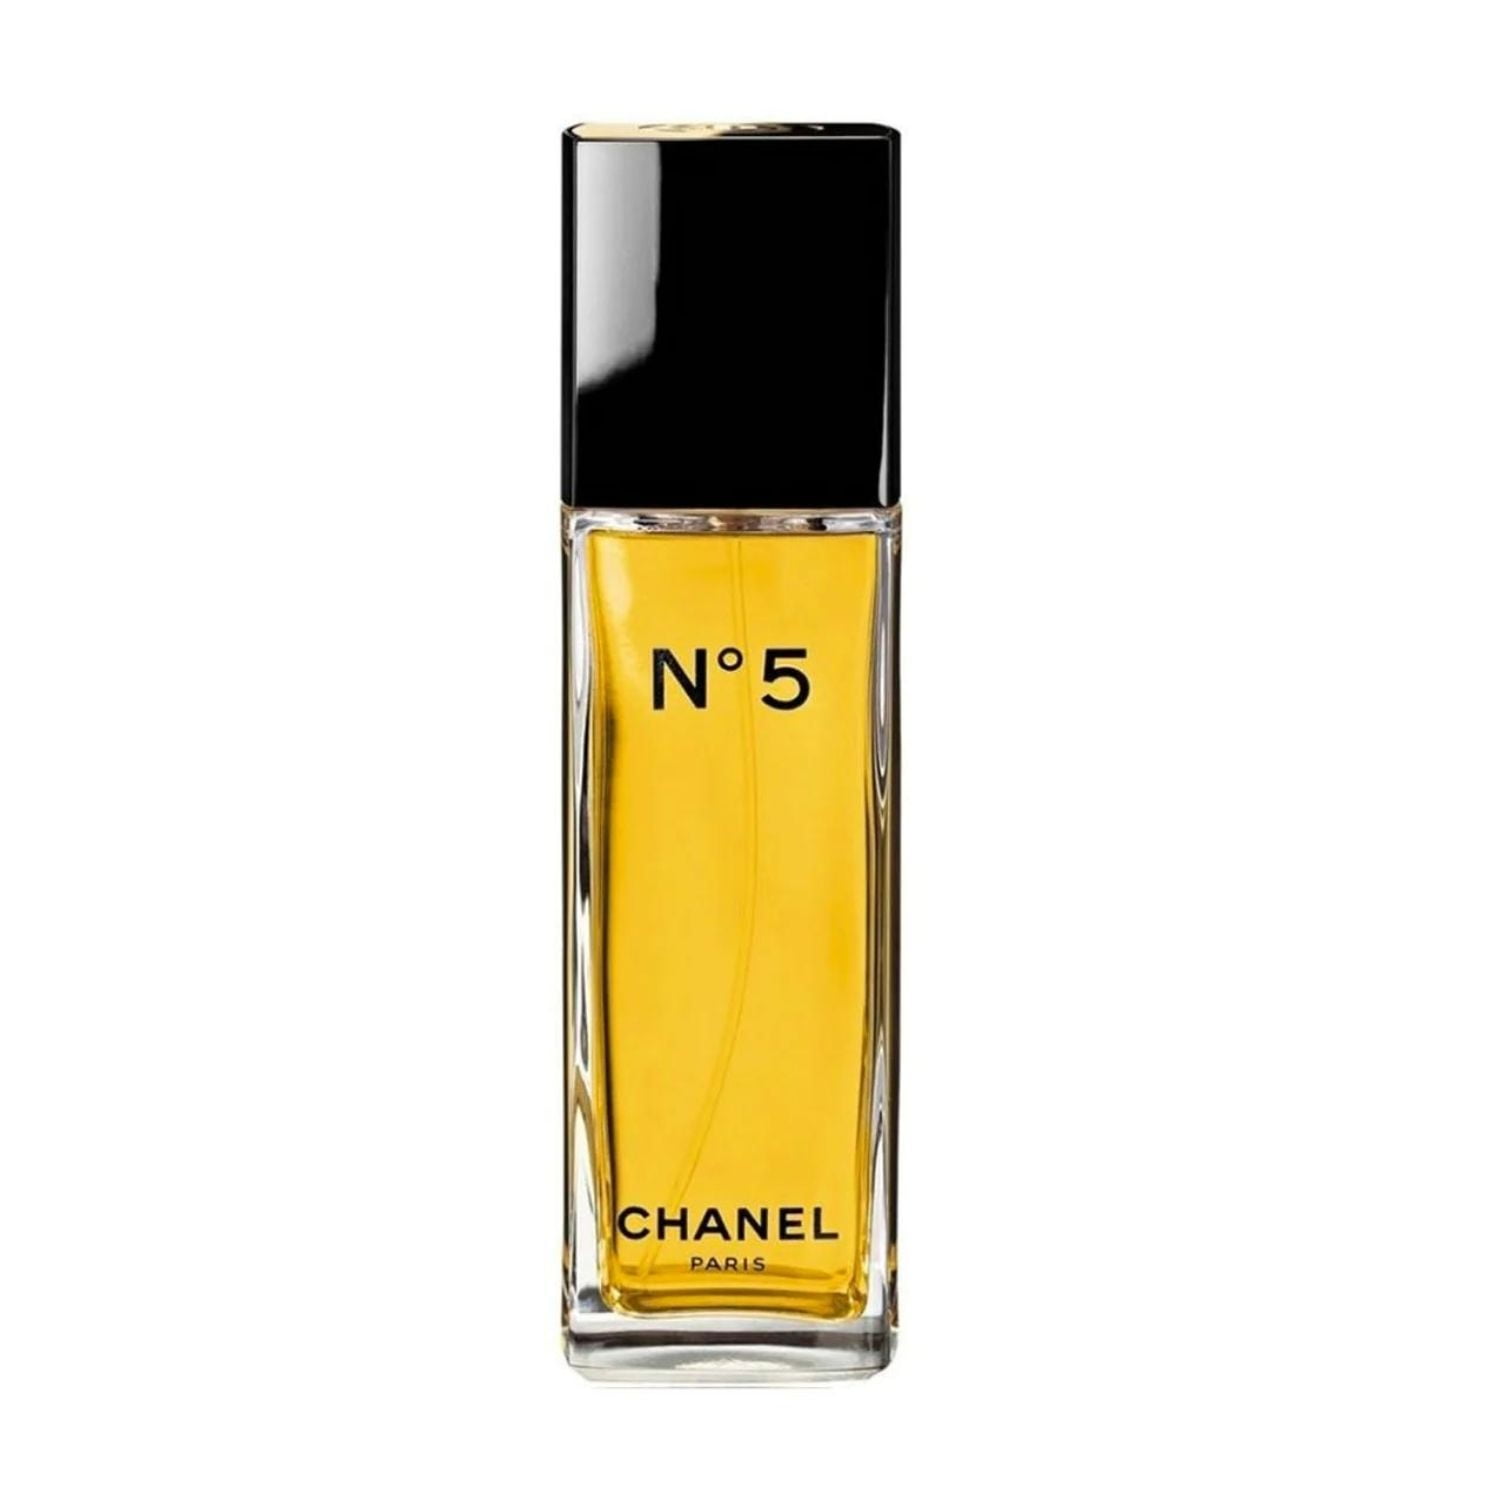 Chanel No 5 Eau De Toilette Vaporisateur Spray For Women 50 ml